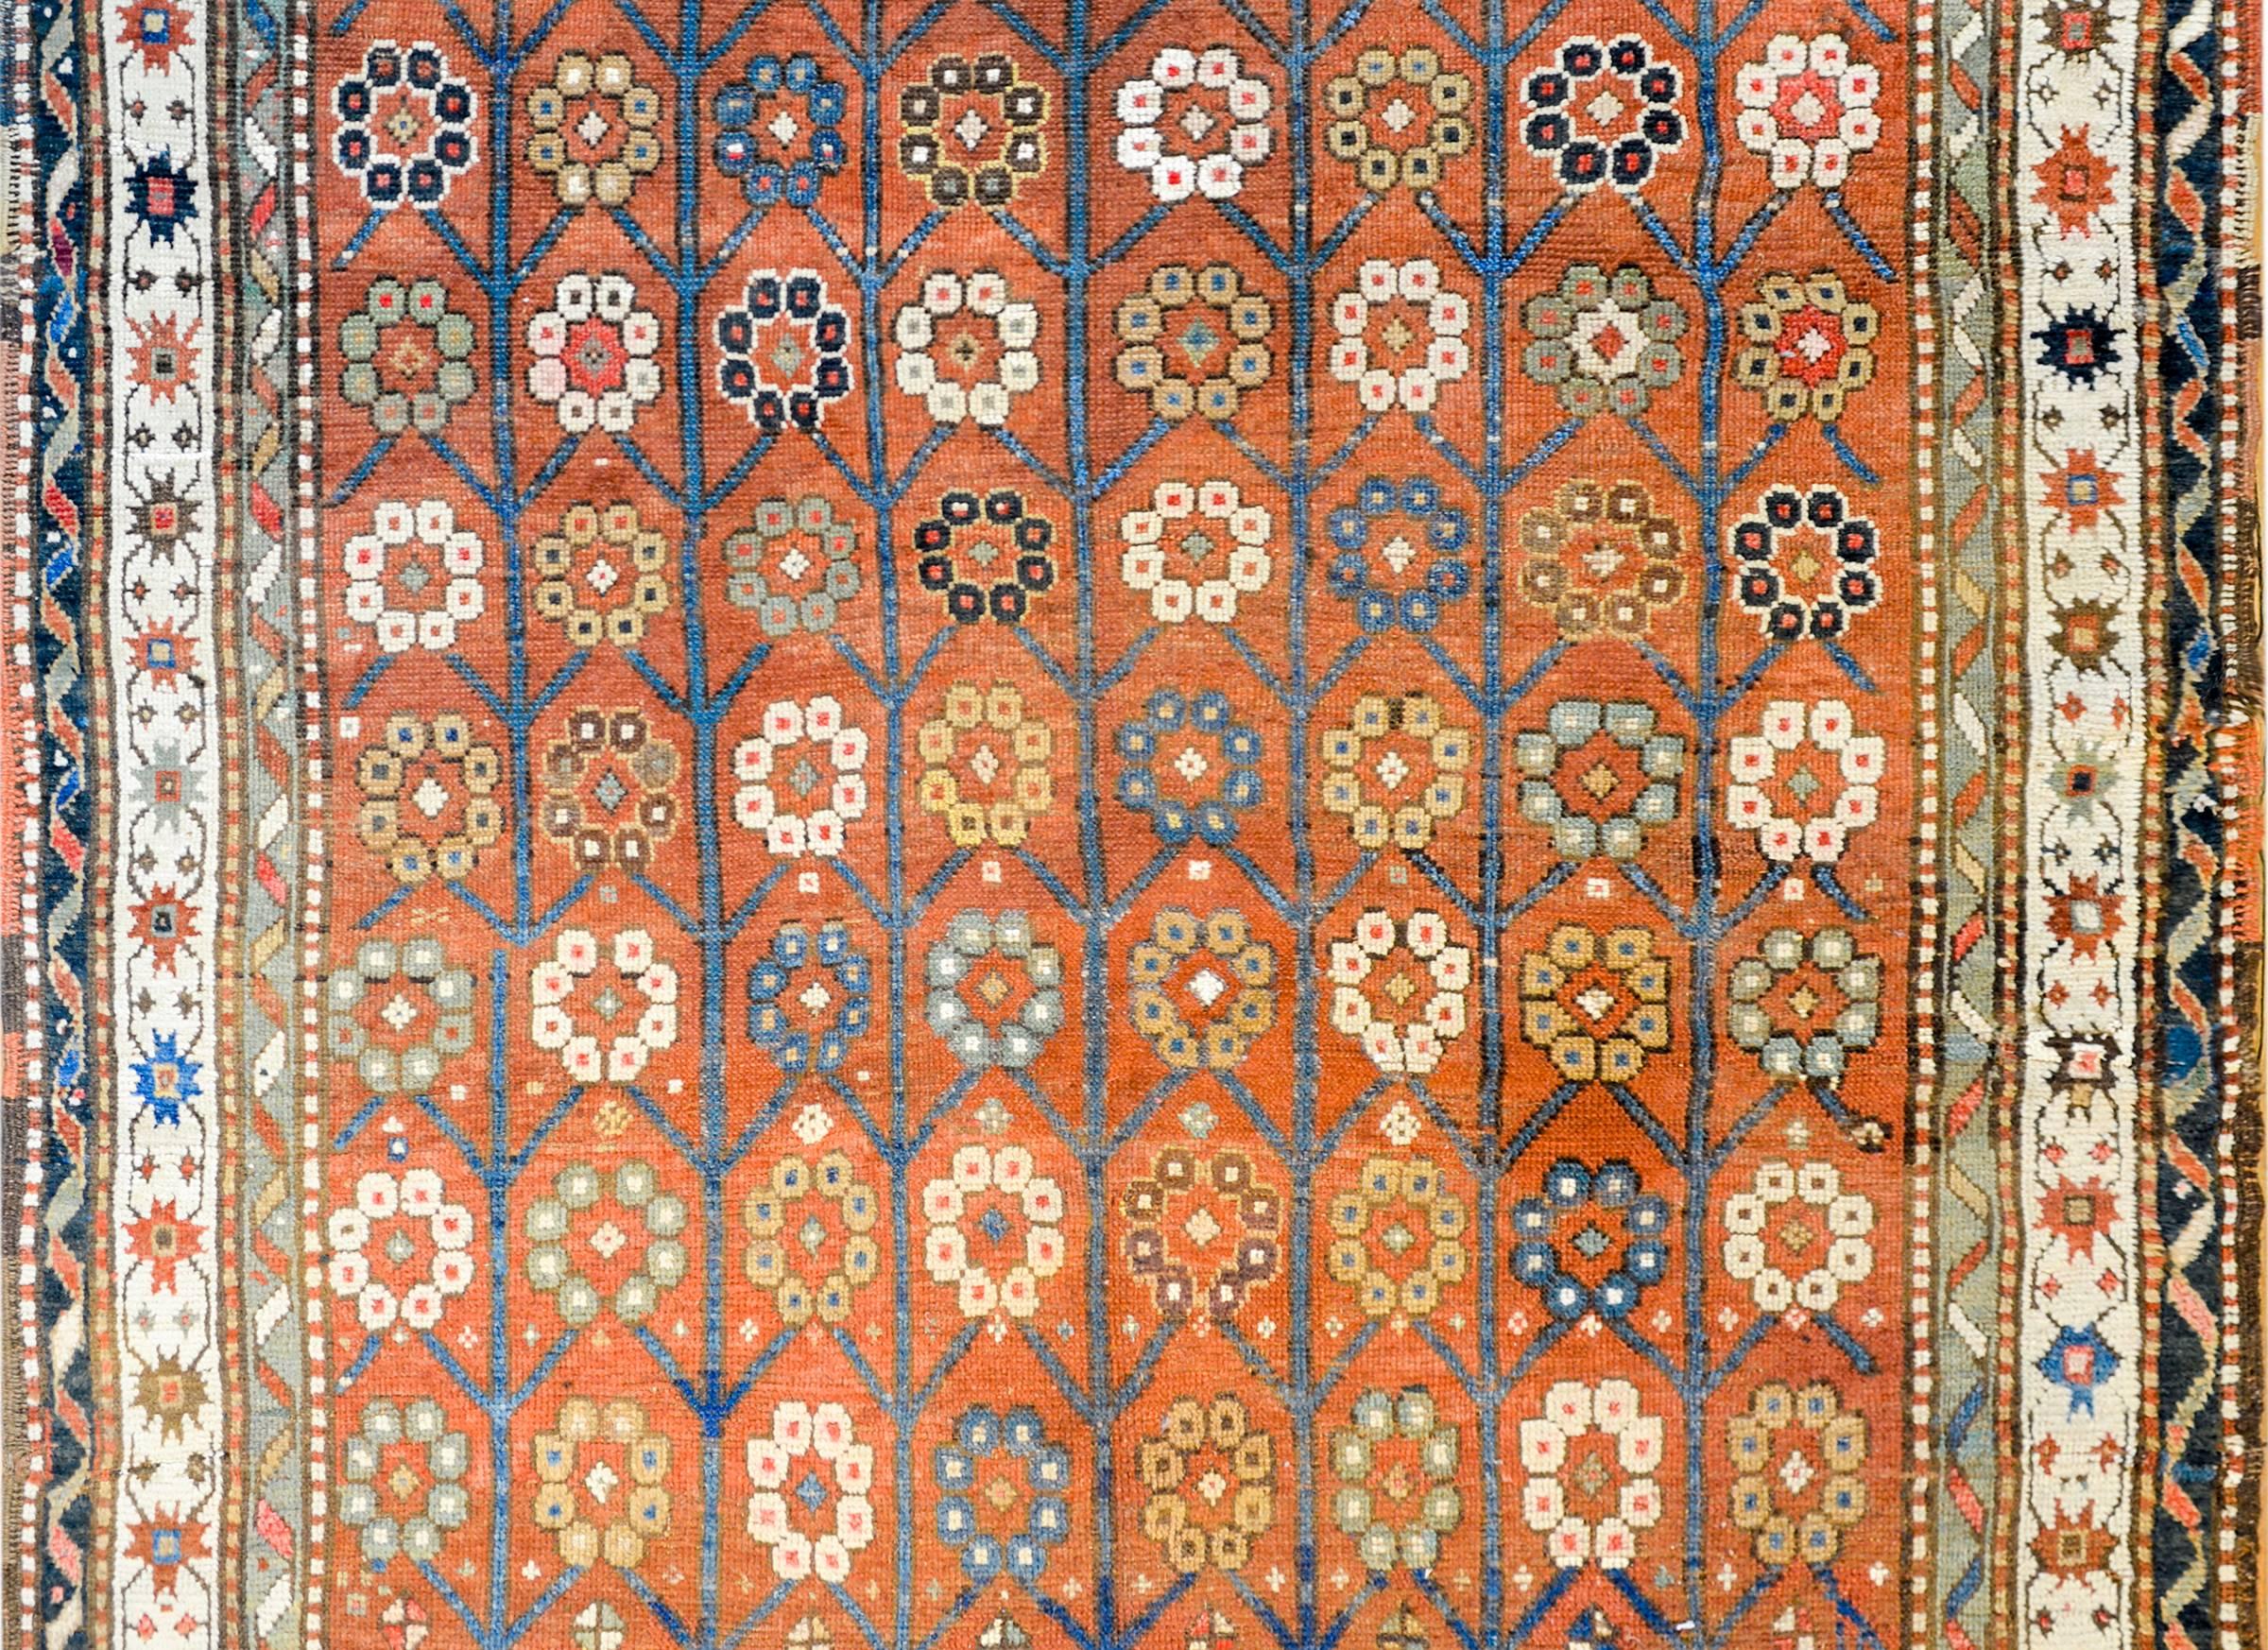 Unglaublicher Karabak-Teppich aus dem frühen 20. Jahrhundert mit einem großflächigen Blumen- und Rankenmuster aus heller und dunkler indigoblauer, goldener, weißer und brauner Wolle auf karminrotem Grund. Die Bordüre besteht aus mehreren